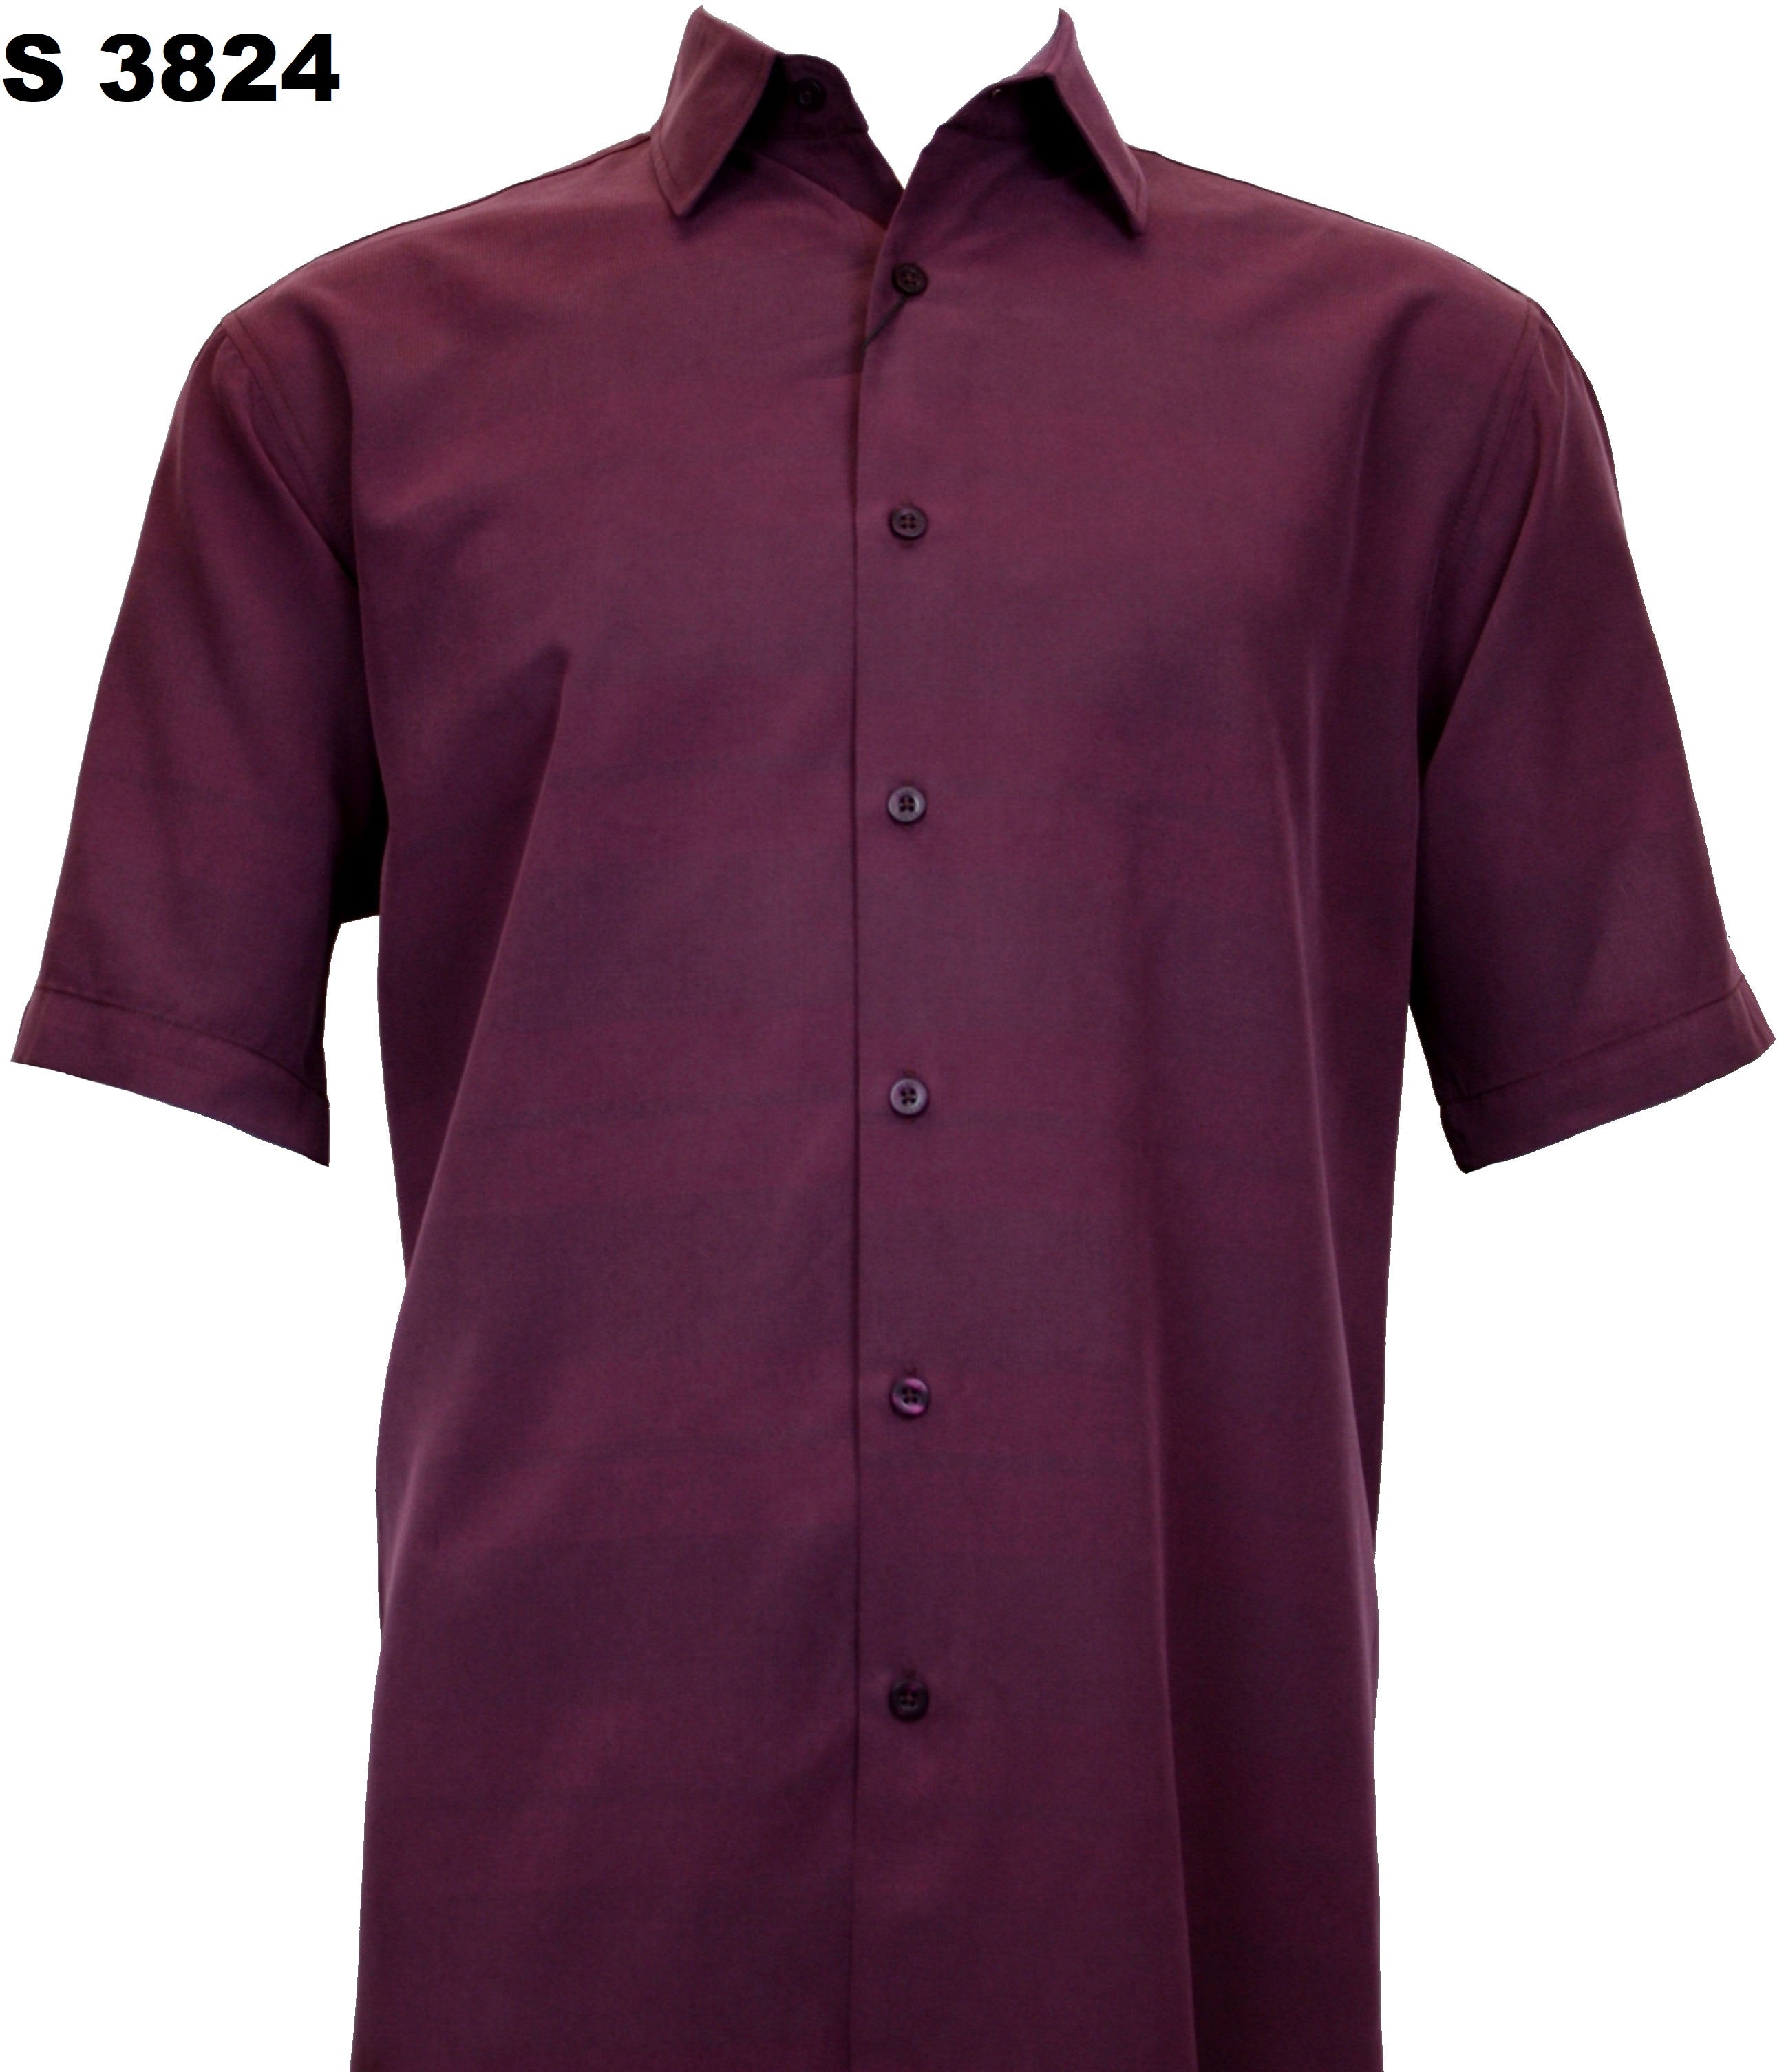 Sangi Short Sleeve Shirt S 3824